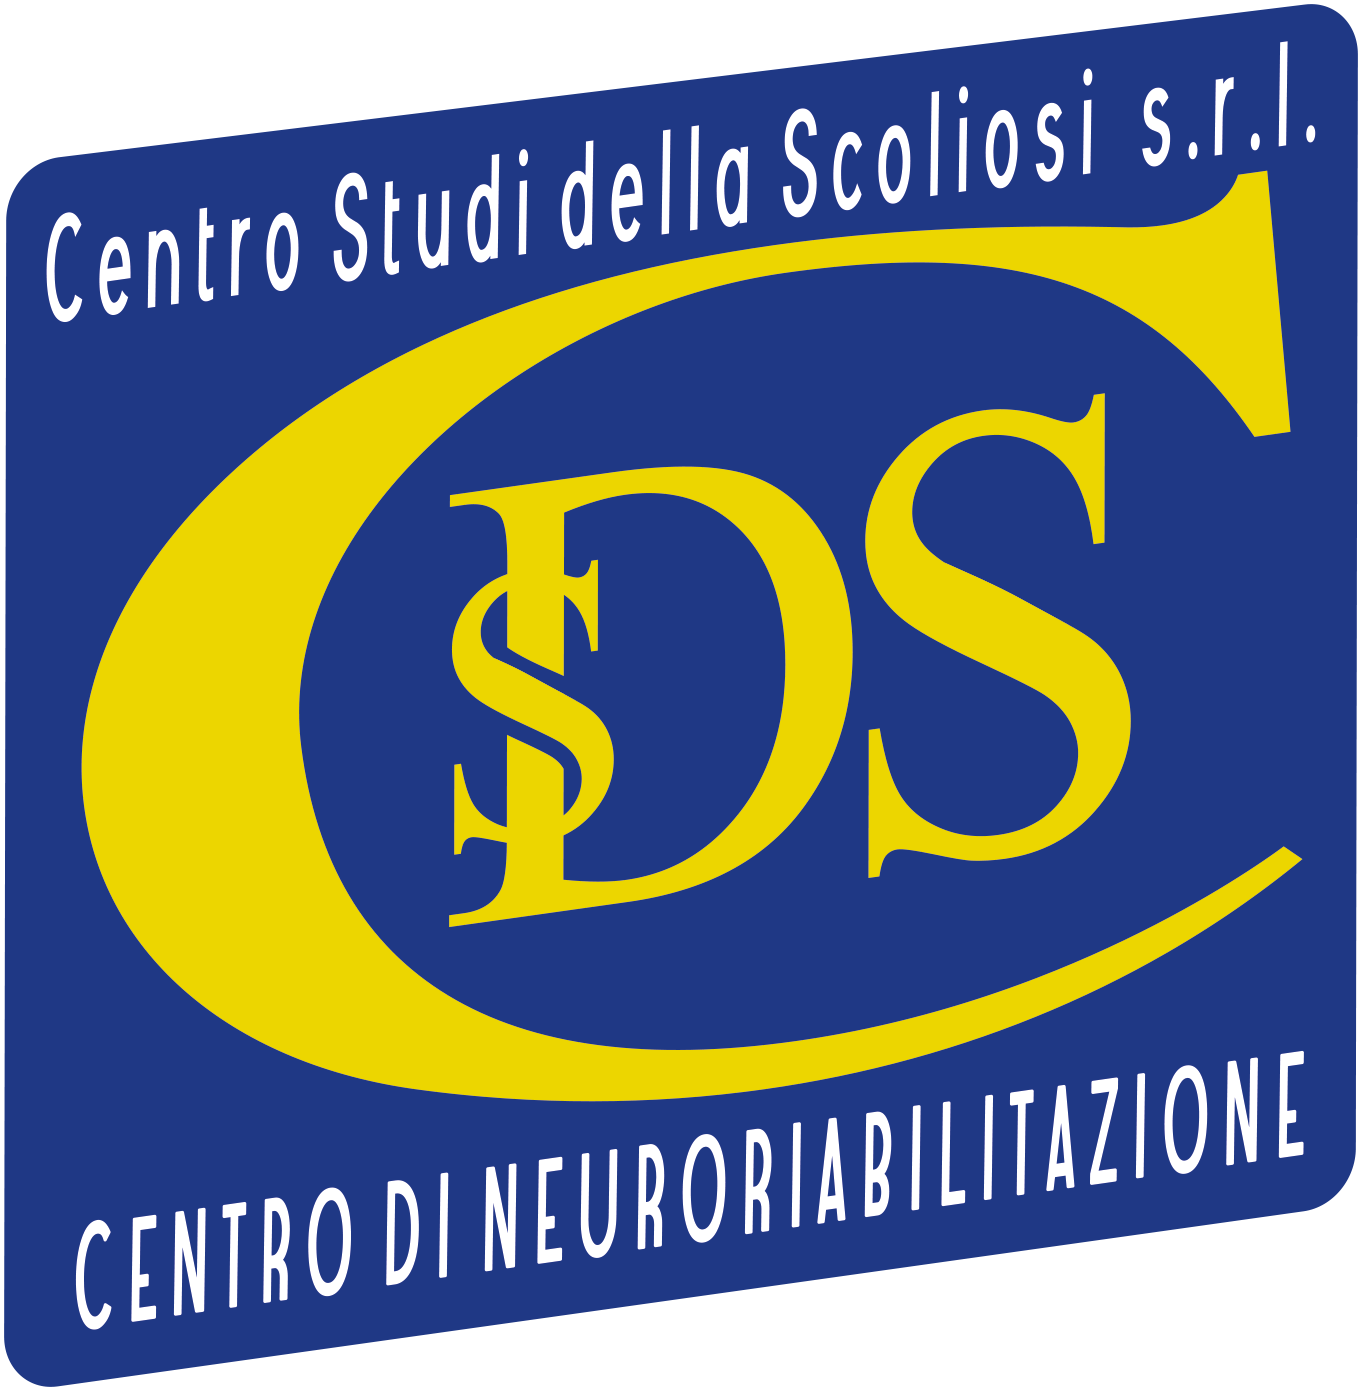 Centro Studi della Scoliosi